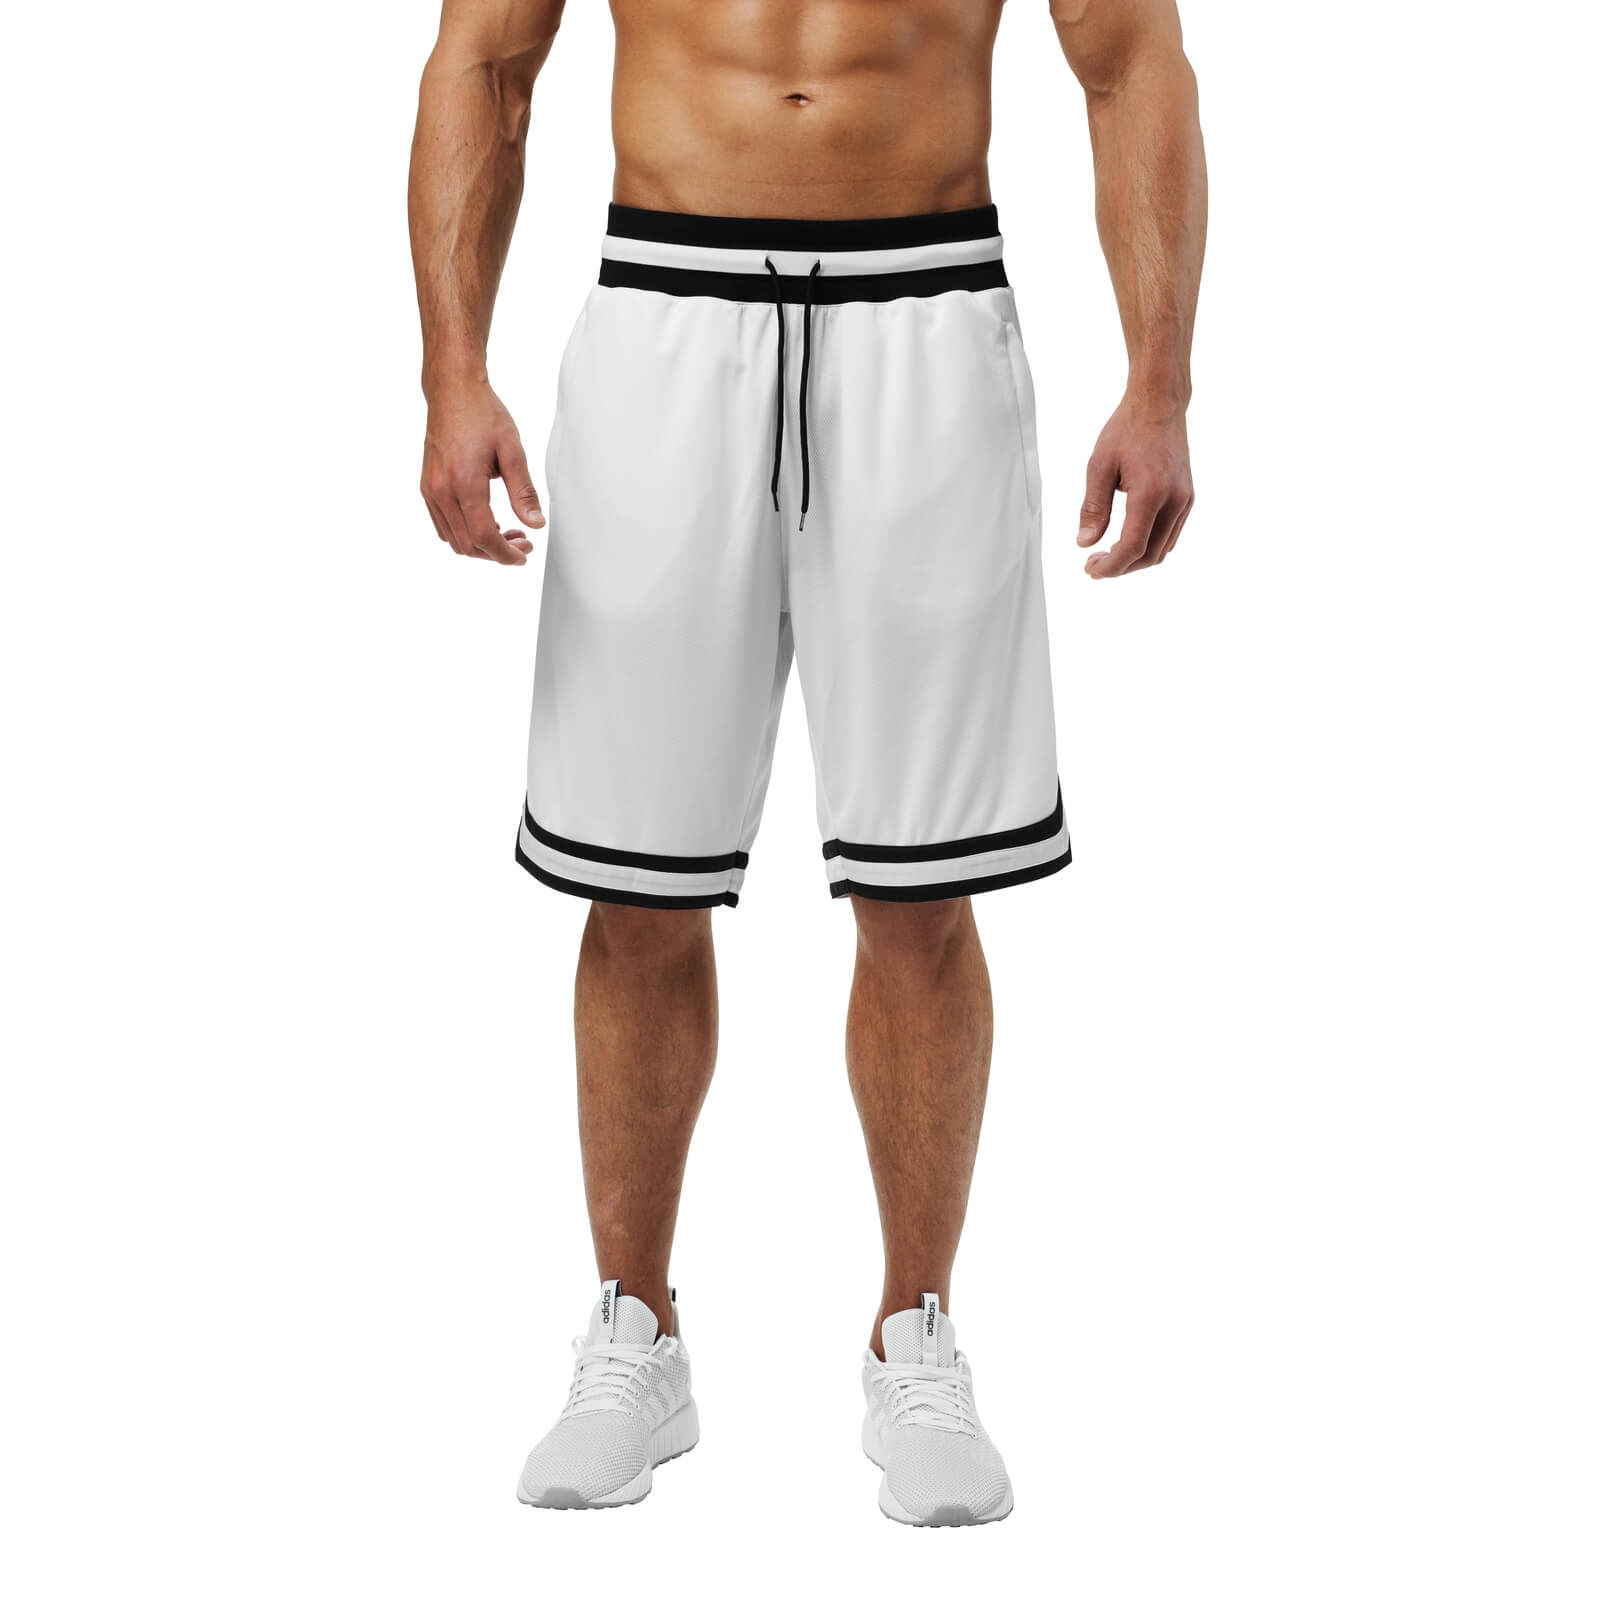 Kolla in Harlem Shorts, white, Better Bodies hos SportGymButiken.se